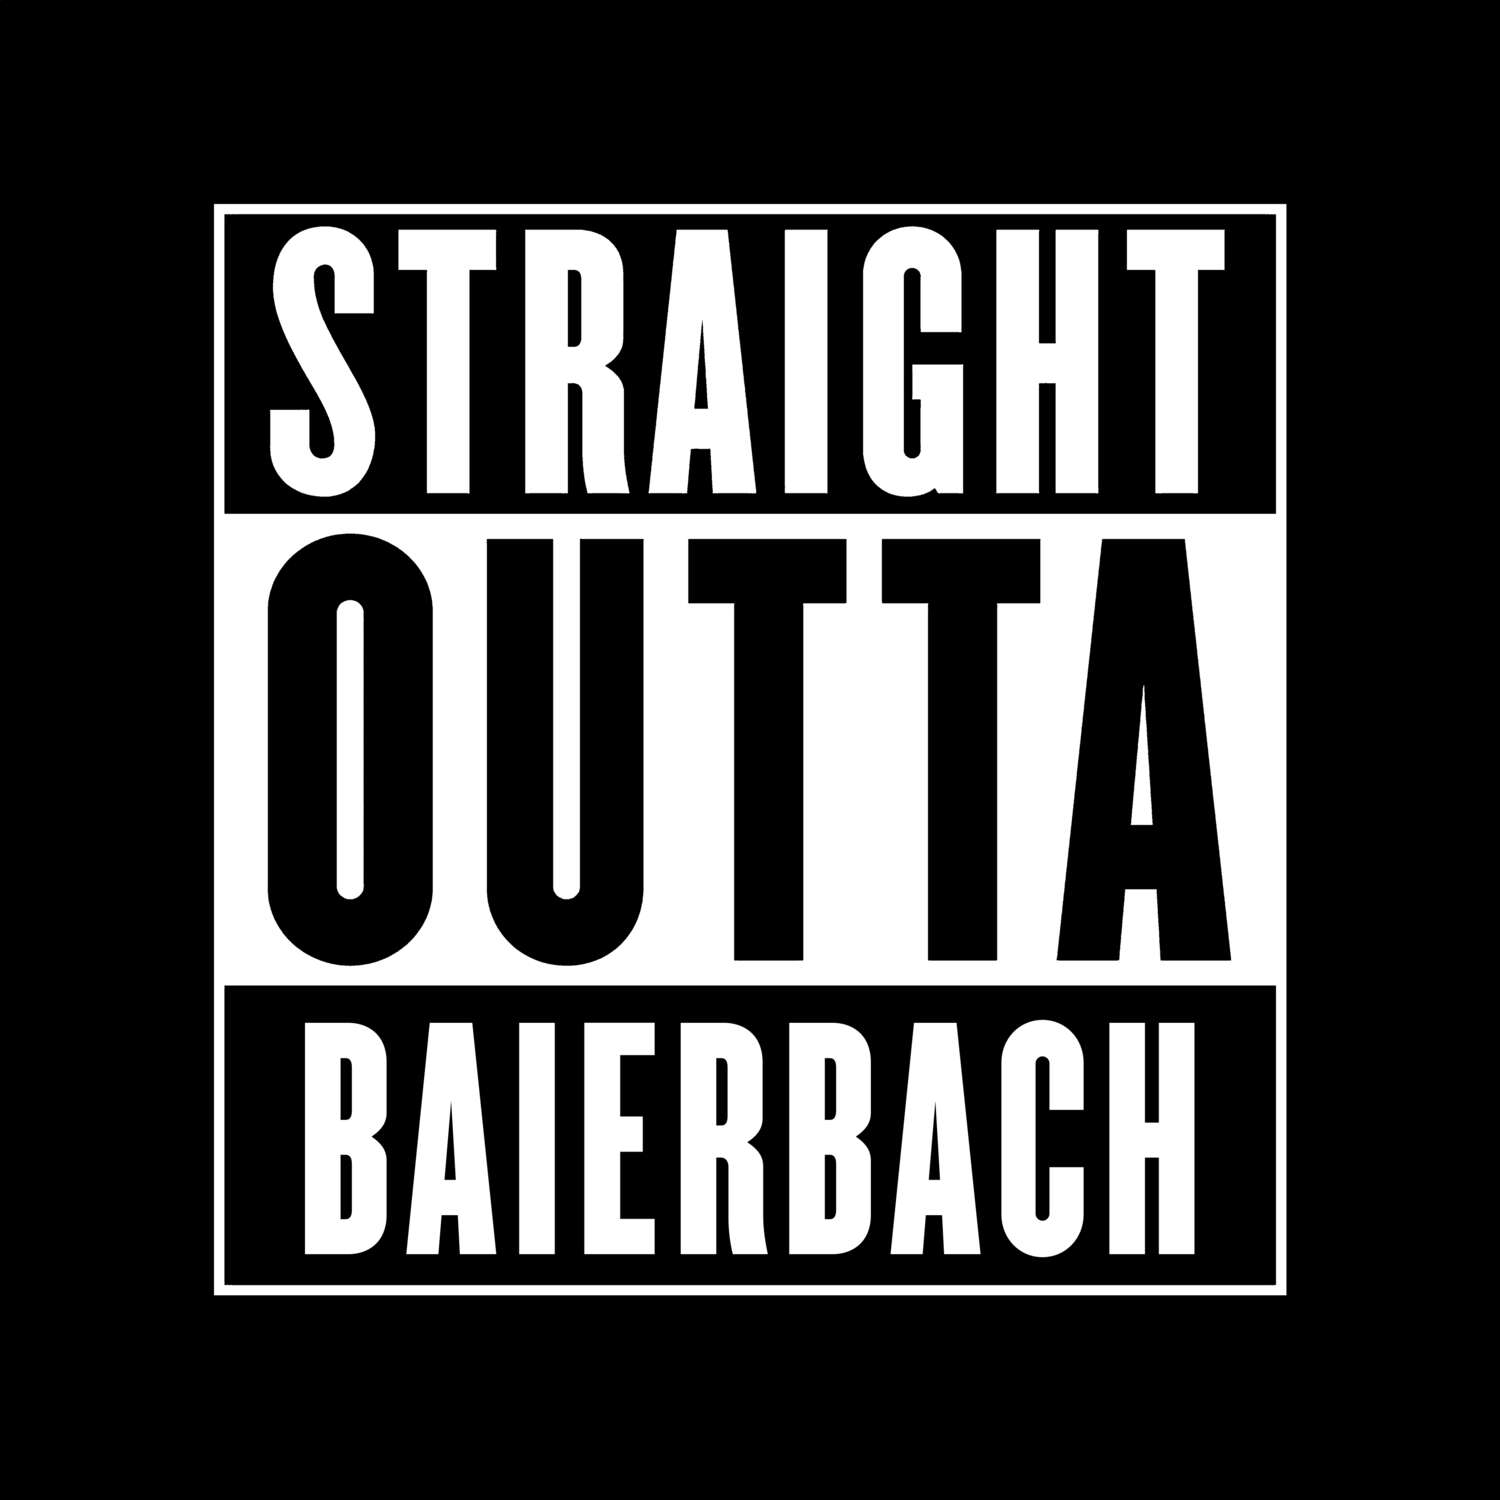 Baierbach T-Shirt »Straight Outta«